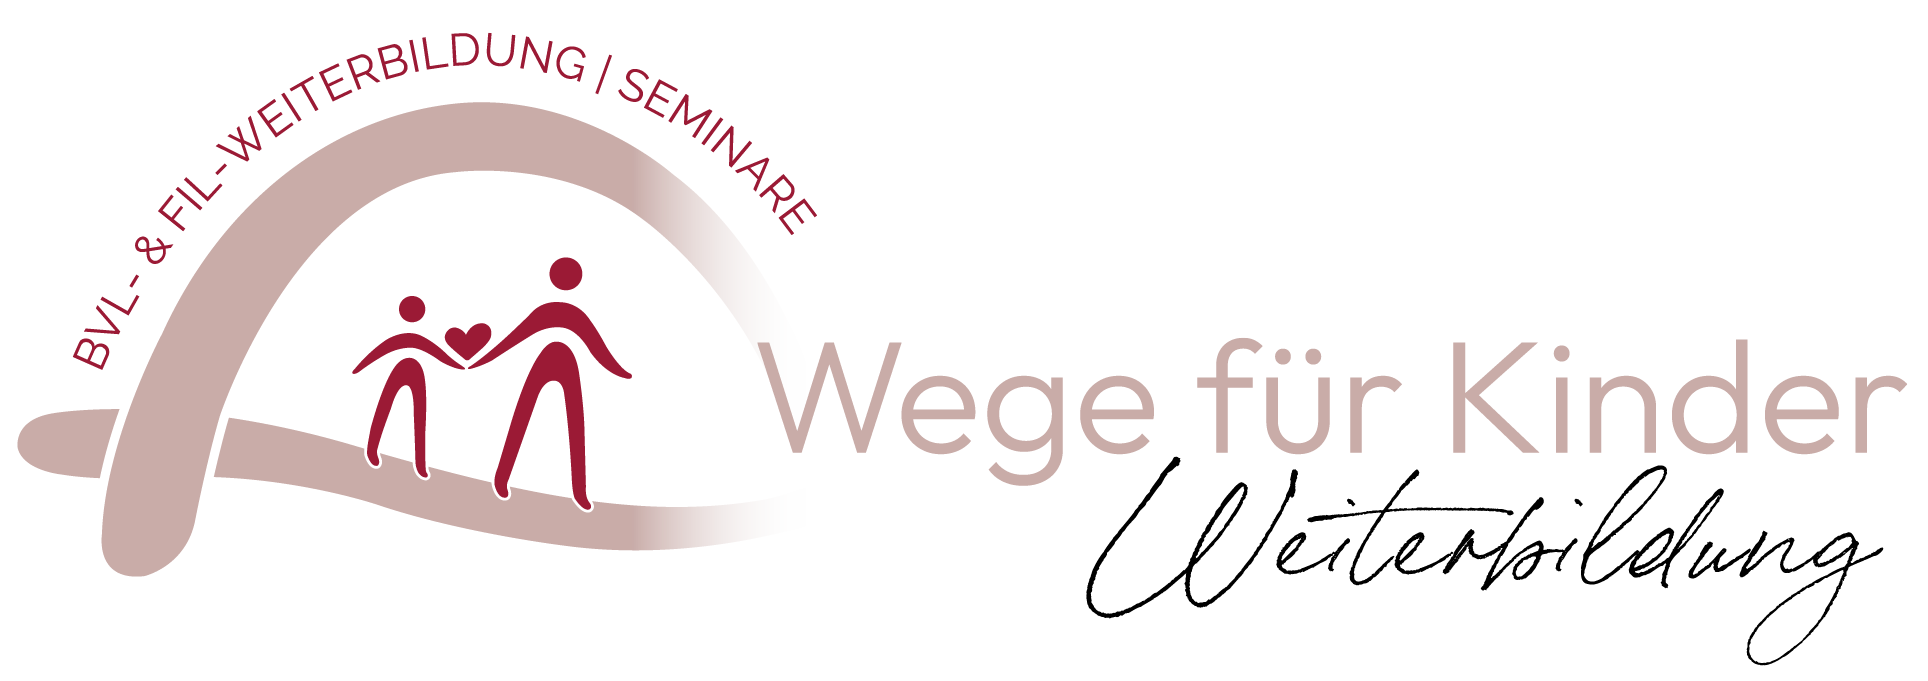 logo_wege-fuer-kinder_weiterbildung.1708606785.png